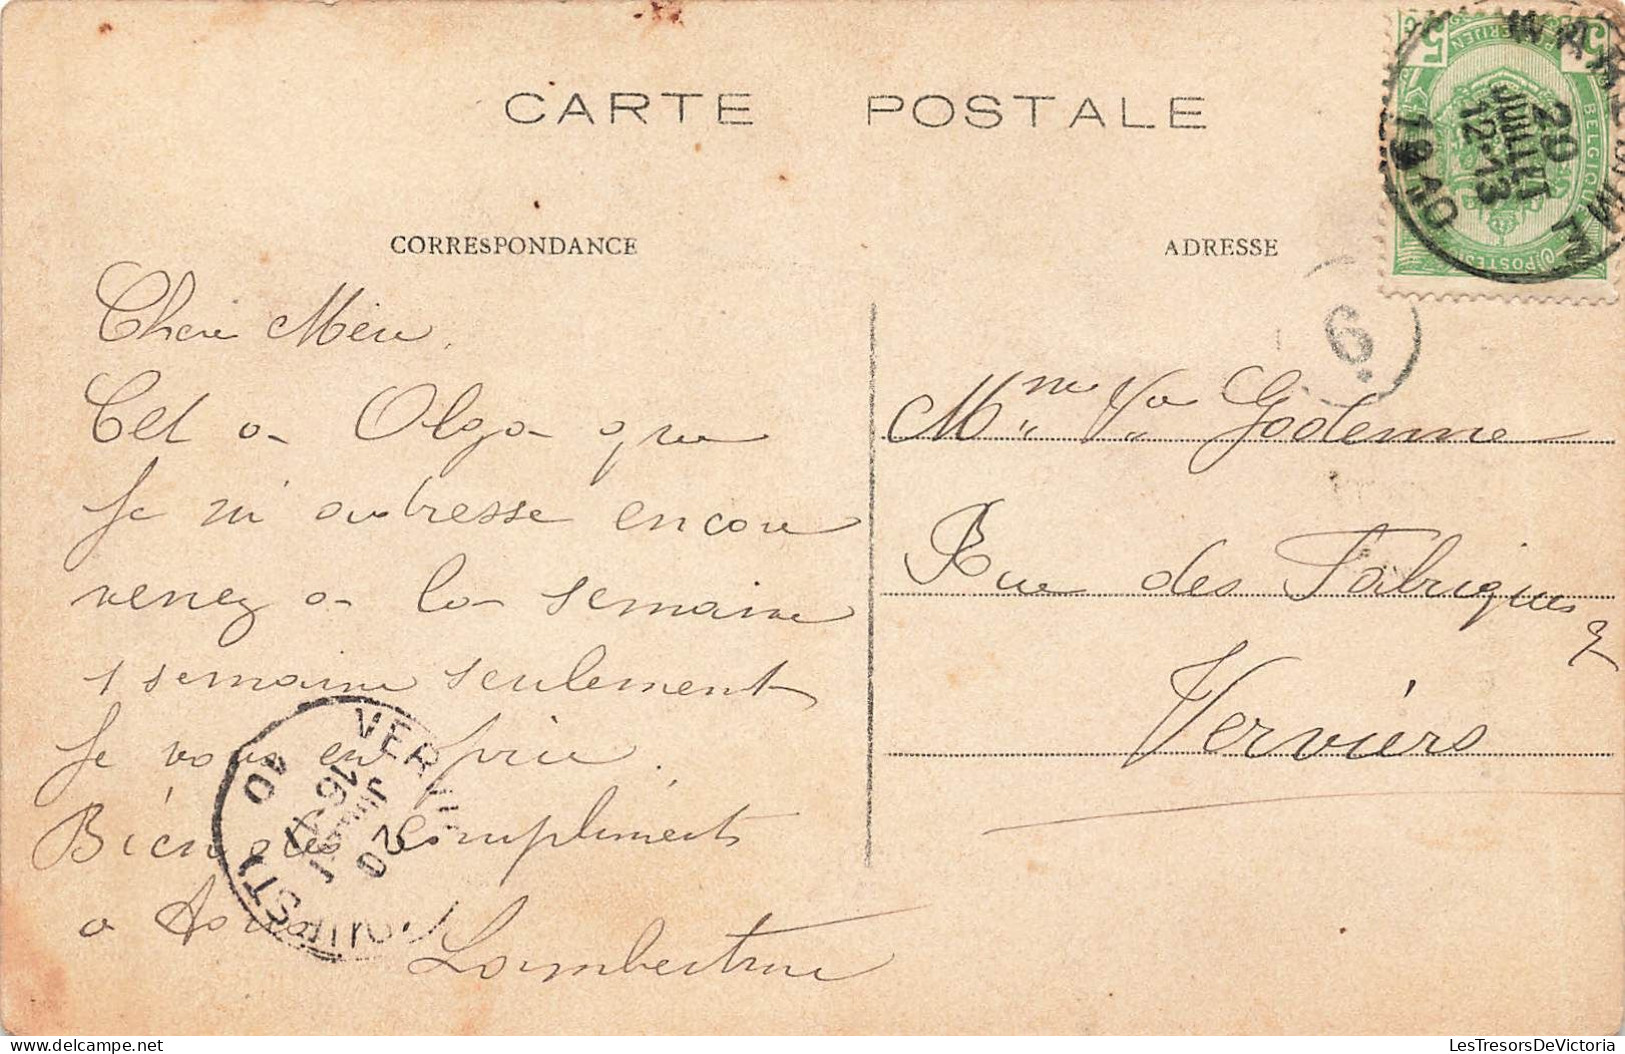 Belgique - Waremme - Rue Neuve - Oblitéré 1910 - Edit. Fern. Jeanne - Carte Postale Ancienne - Waremme